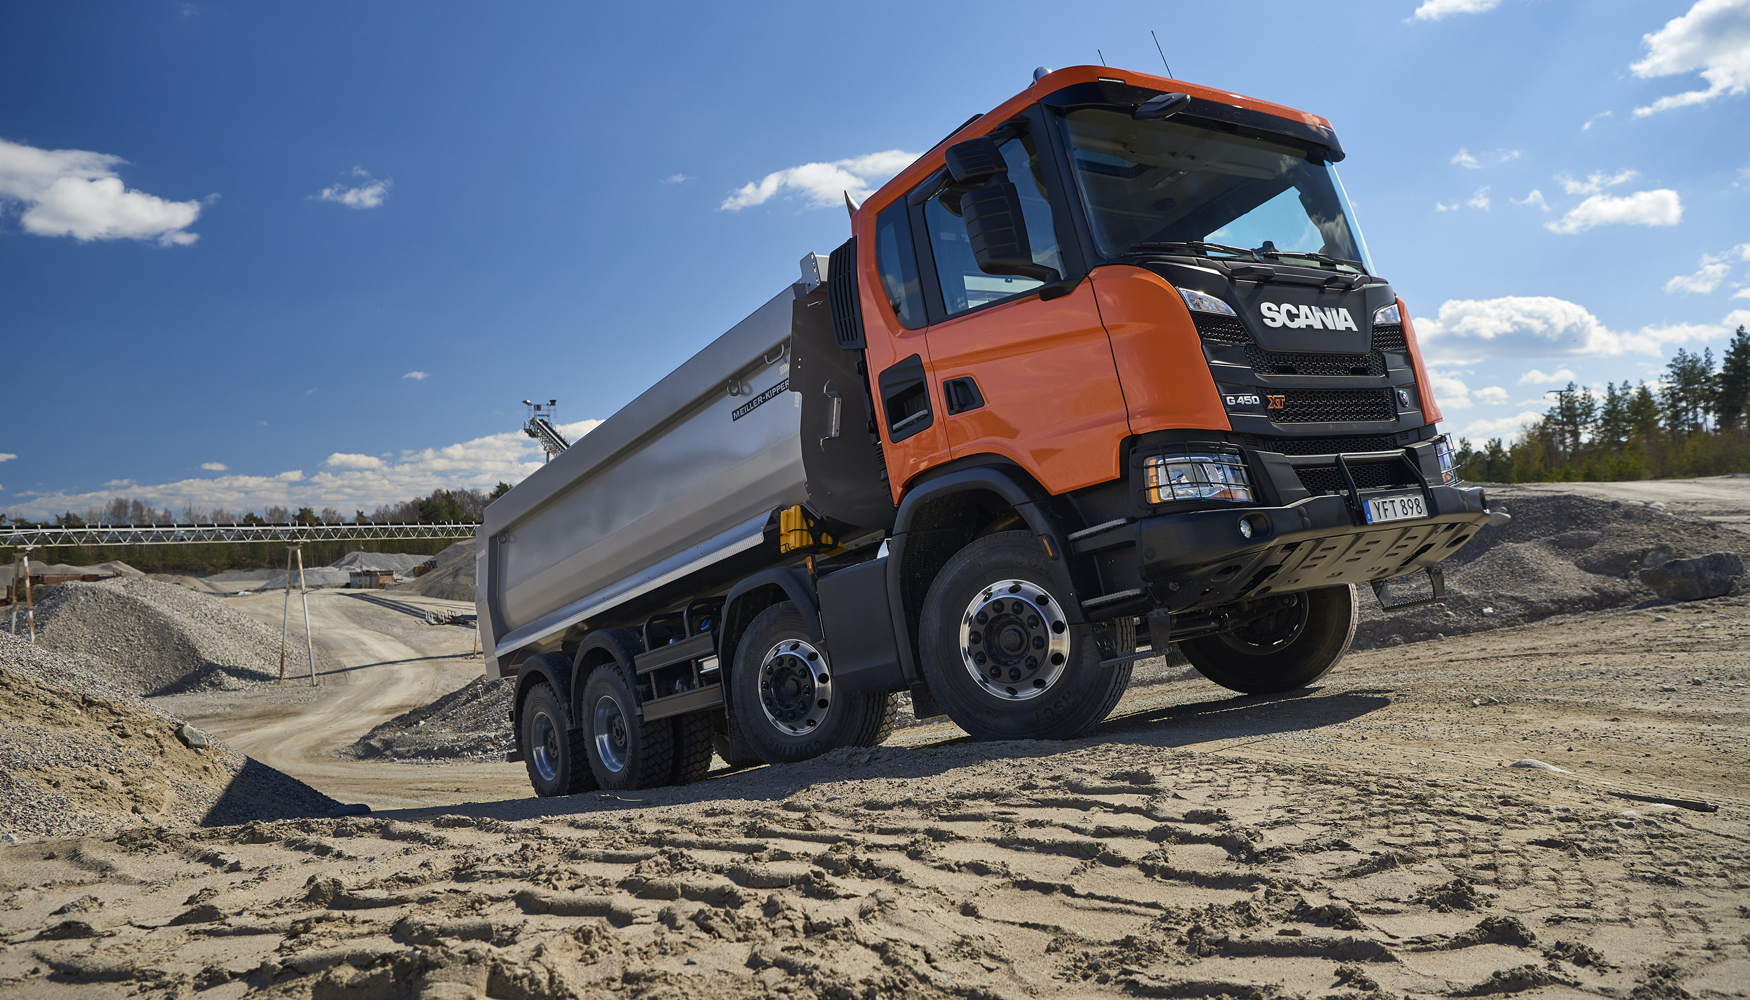 Con XT Scania lanza un camin destinado a los trabajos ms complejos, en los que son cruciales caractersticas como robustez...